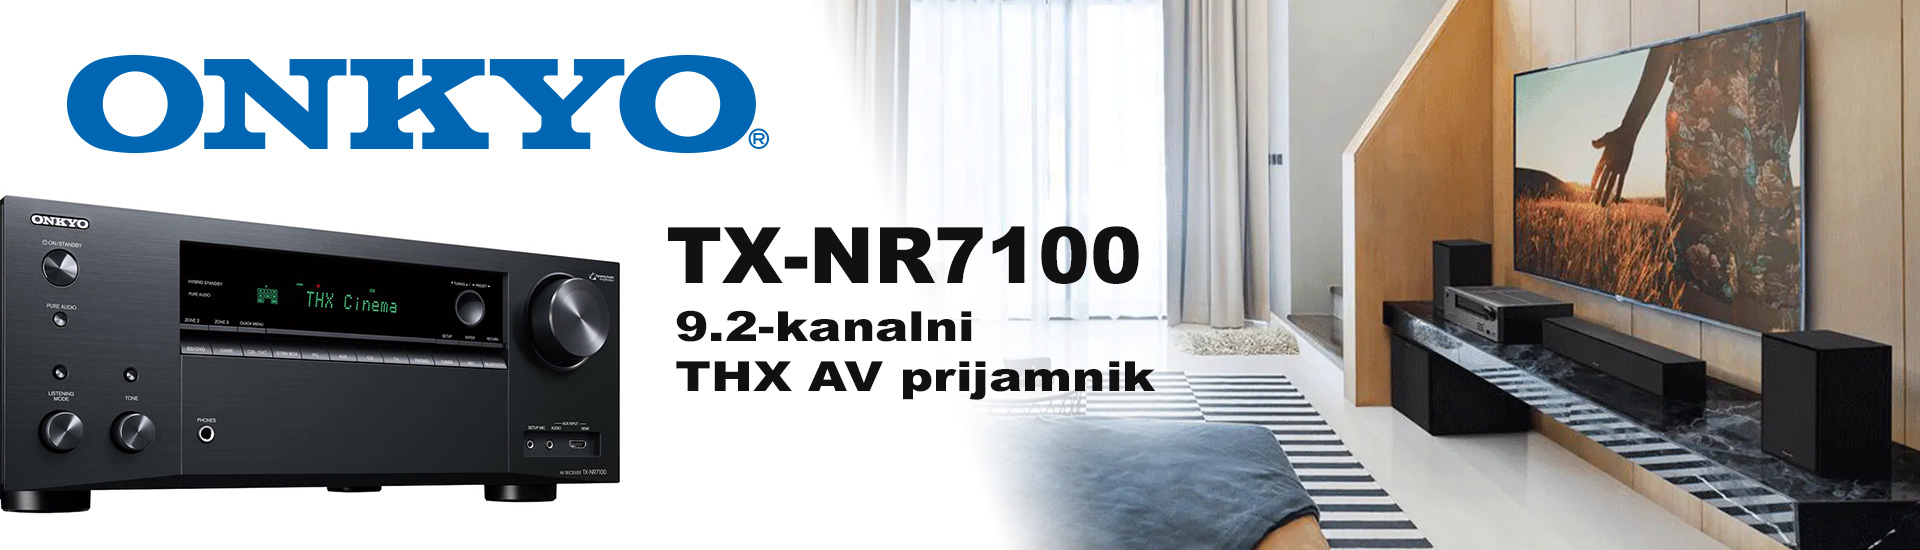 Onkyo TX-NR7100 - 9.2-kanalni THX AV prijamnik